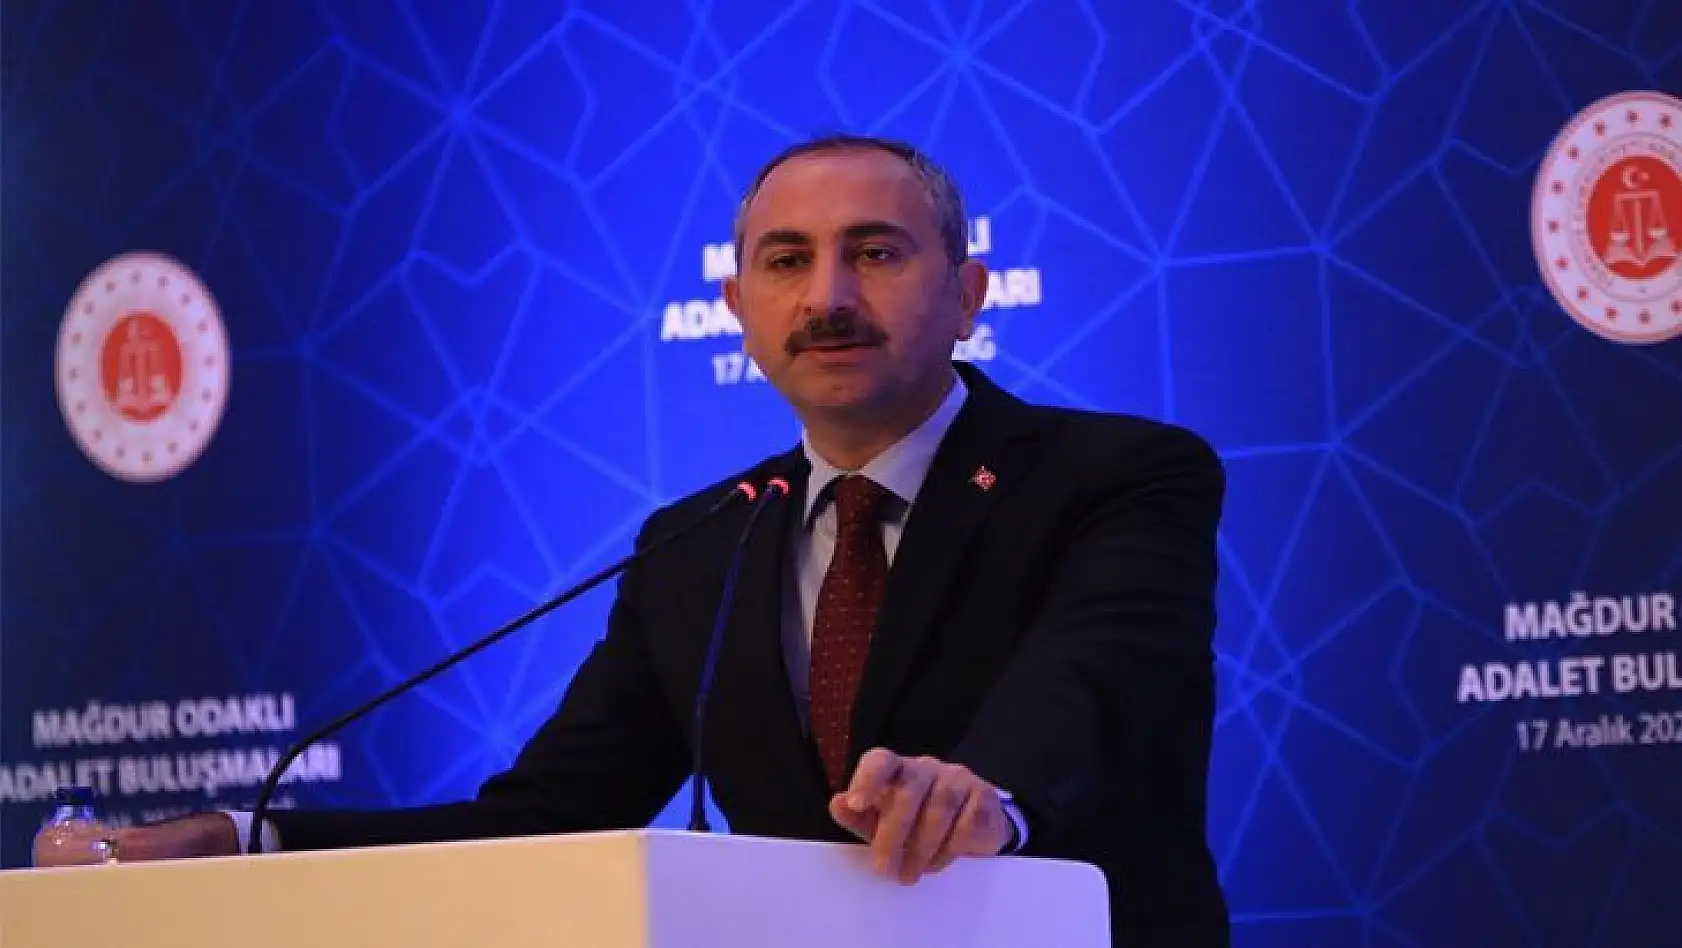 Adalet Bakanı Gül: 'Yargı Adaleti İnsanımızın Sığınacağı En Son Limandır, Çaredir'